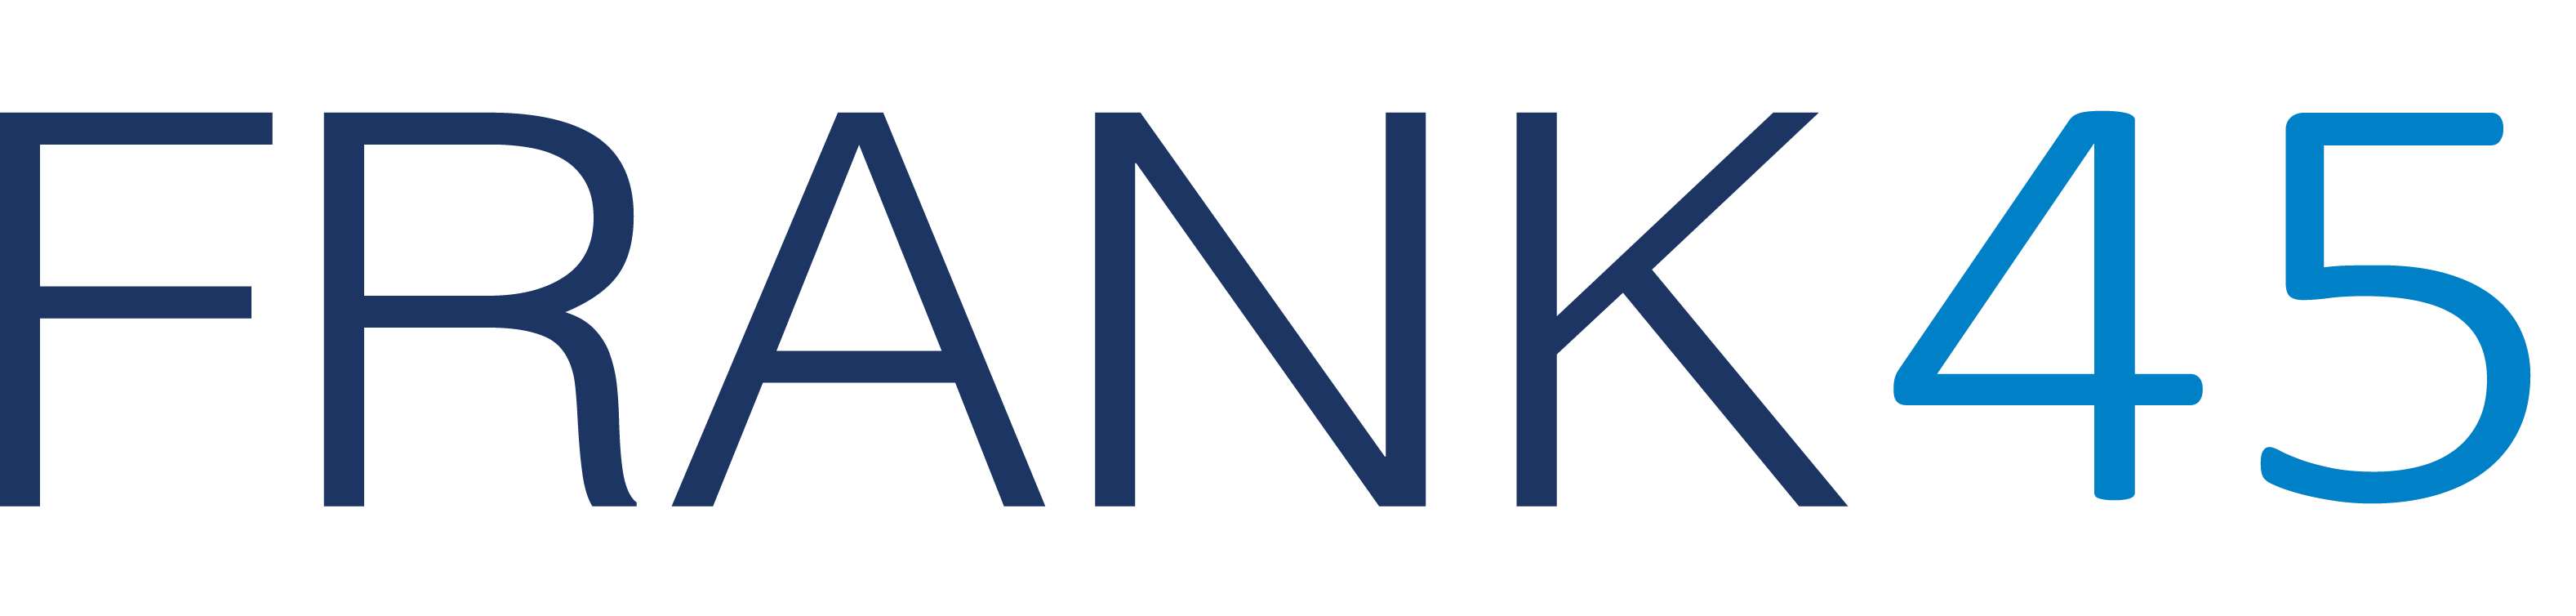 Frank45_Logo.png